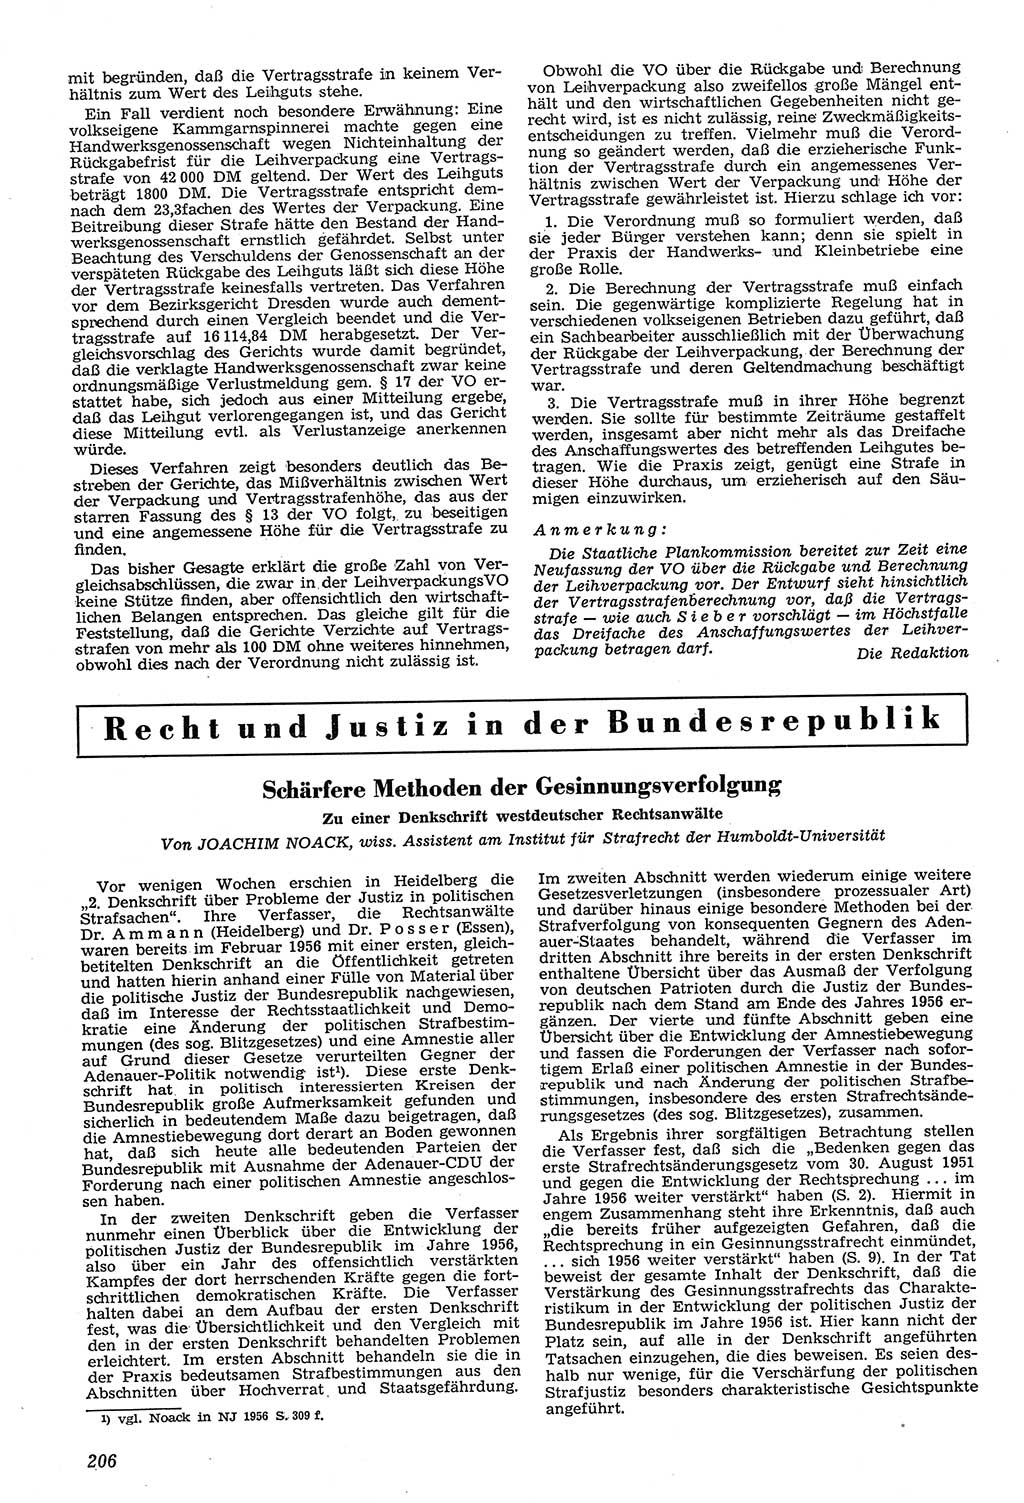 Neue Justiz (NJ), Zeitschrift für Recht und Rechtswissenschaft [Deutsche Demokratische Republik (DDR)], 11. Jahrgang 1957, Seite 206 (NJ DDR 1957, S. 206)